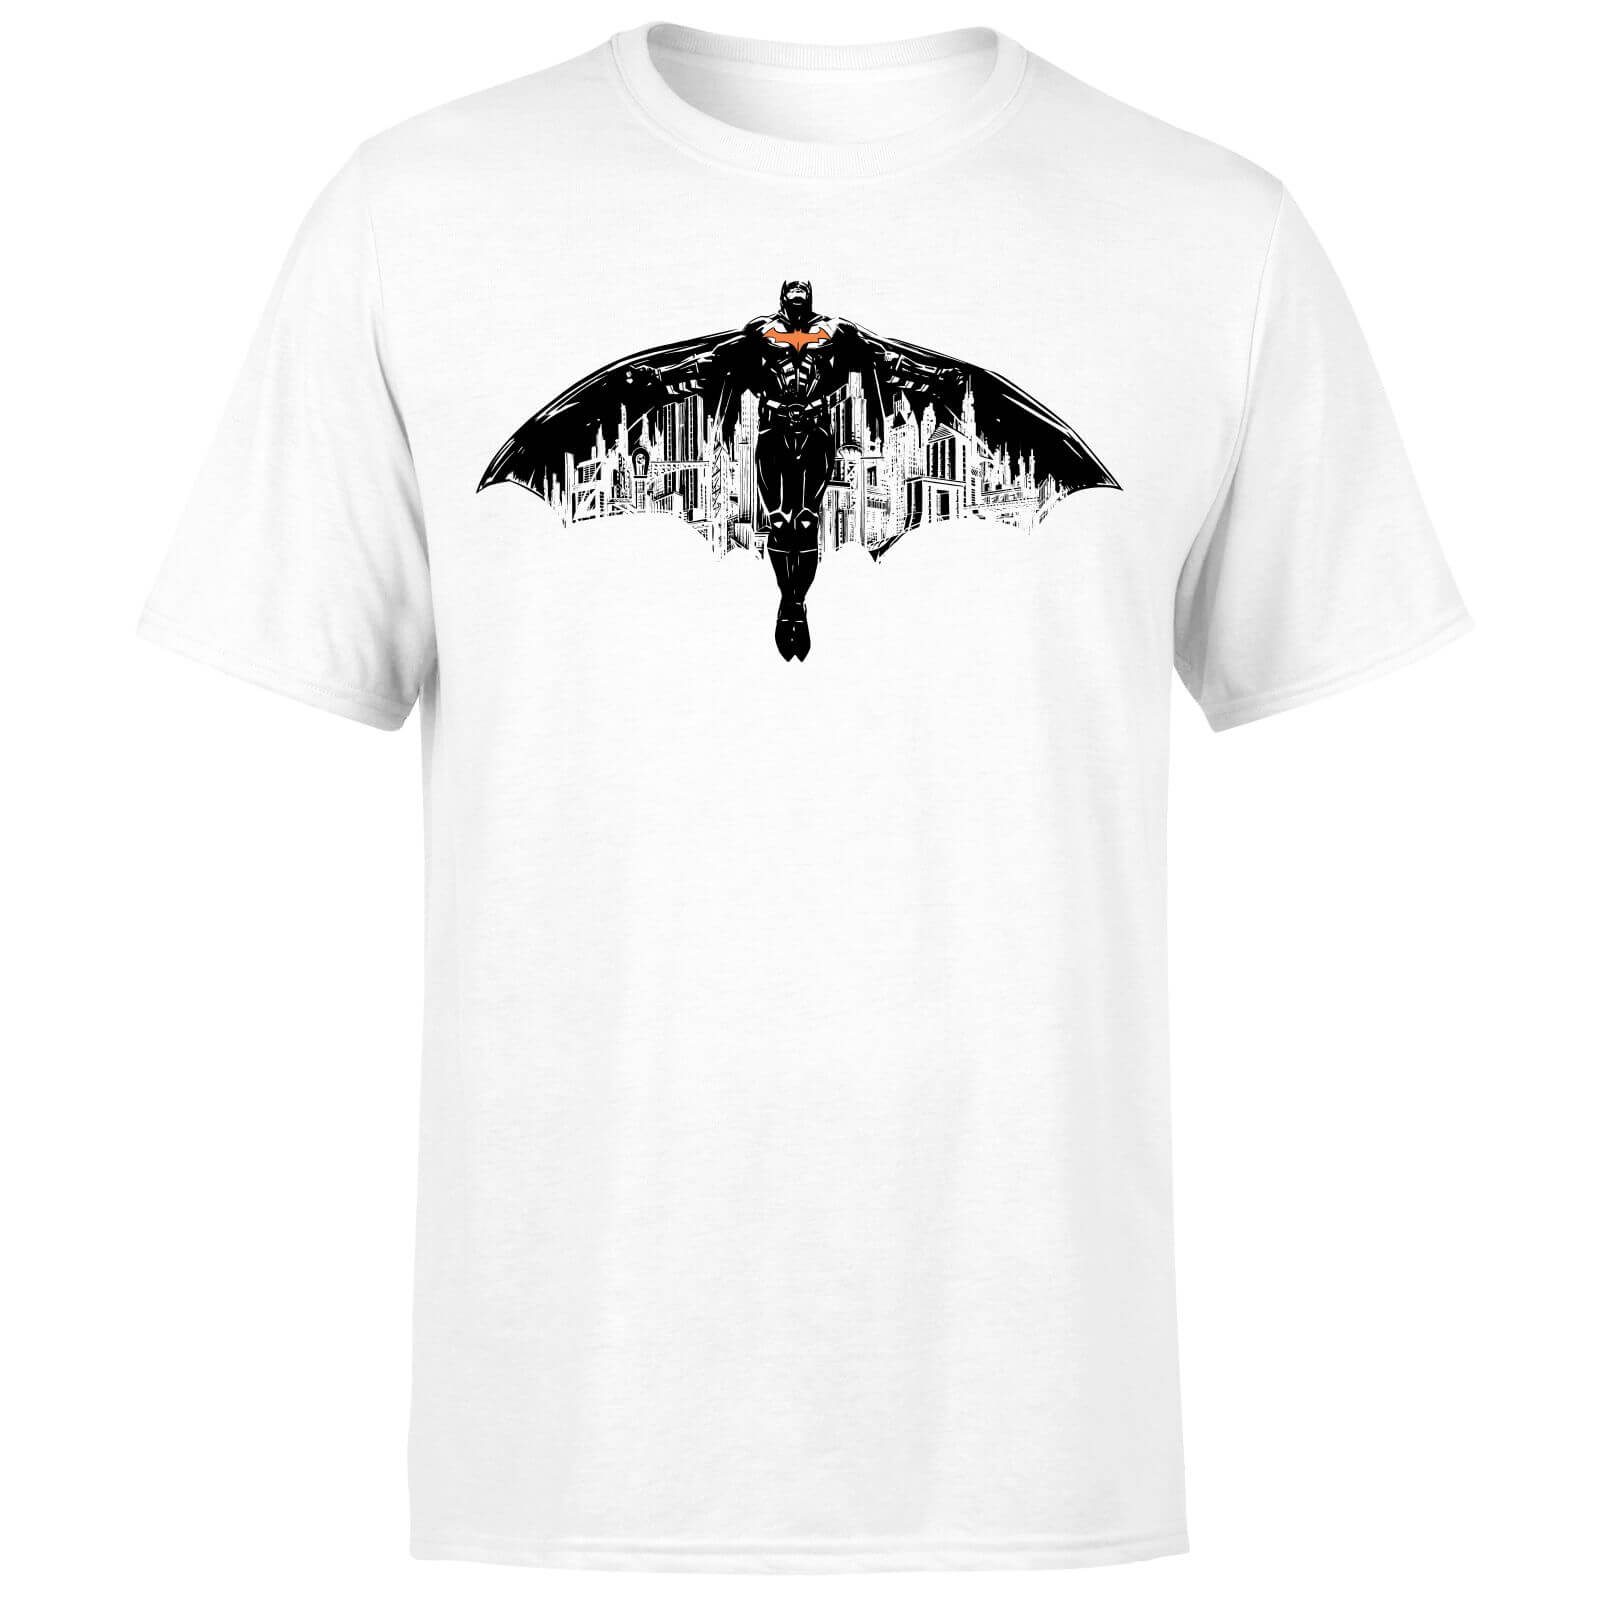 Batman Begins The City Belongs To Me Herren T-Shirt - Weiß - XL - Weiß